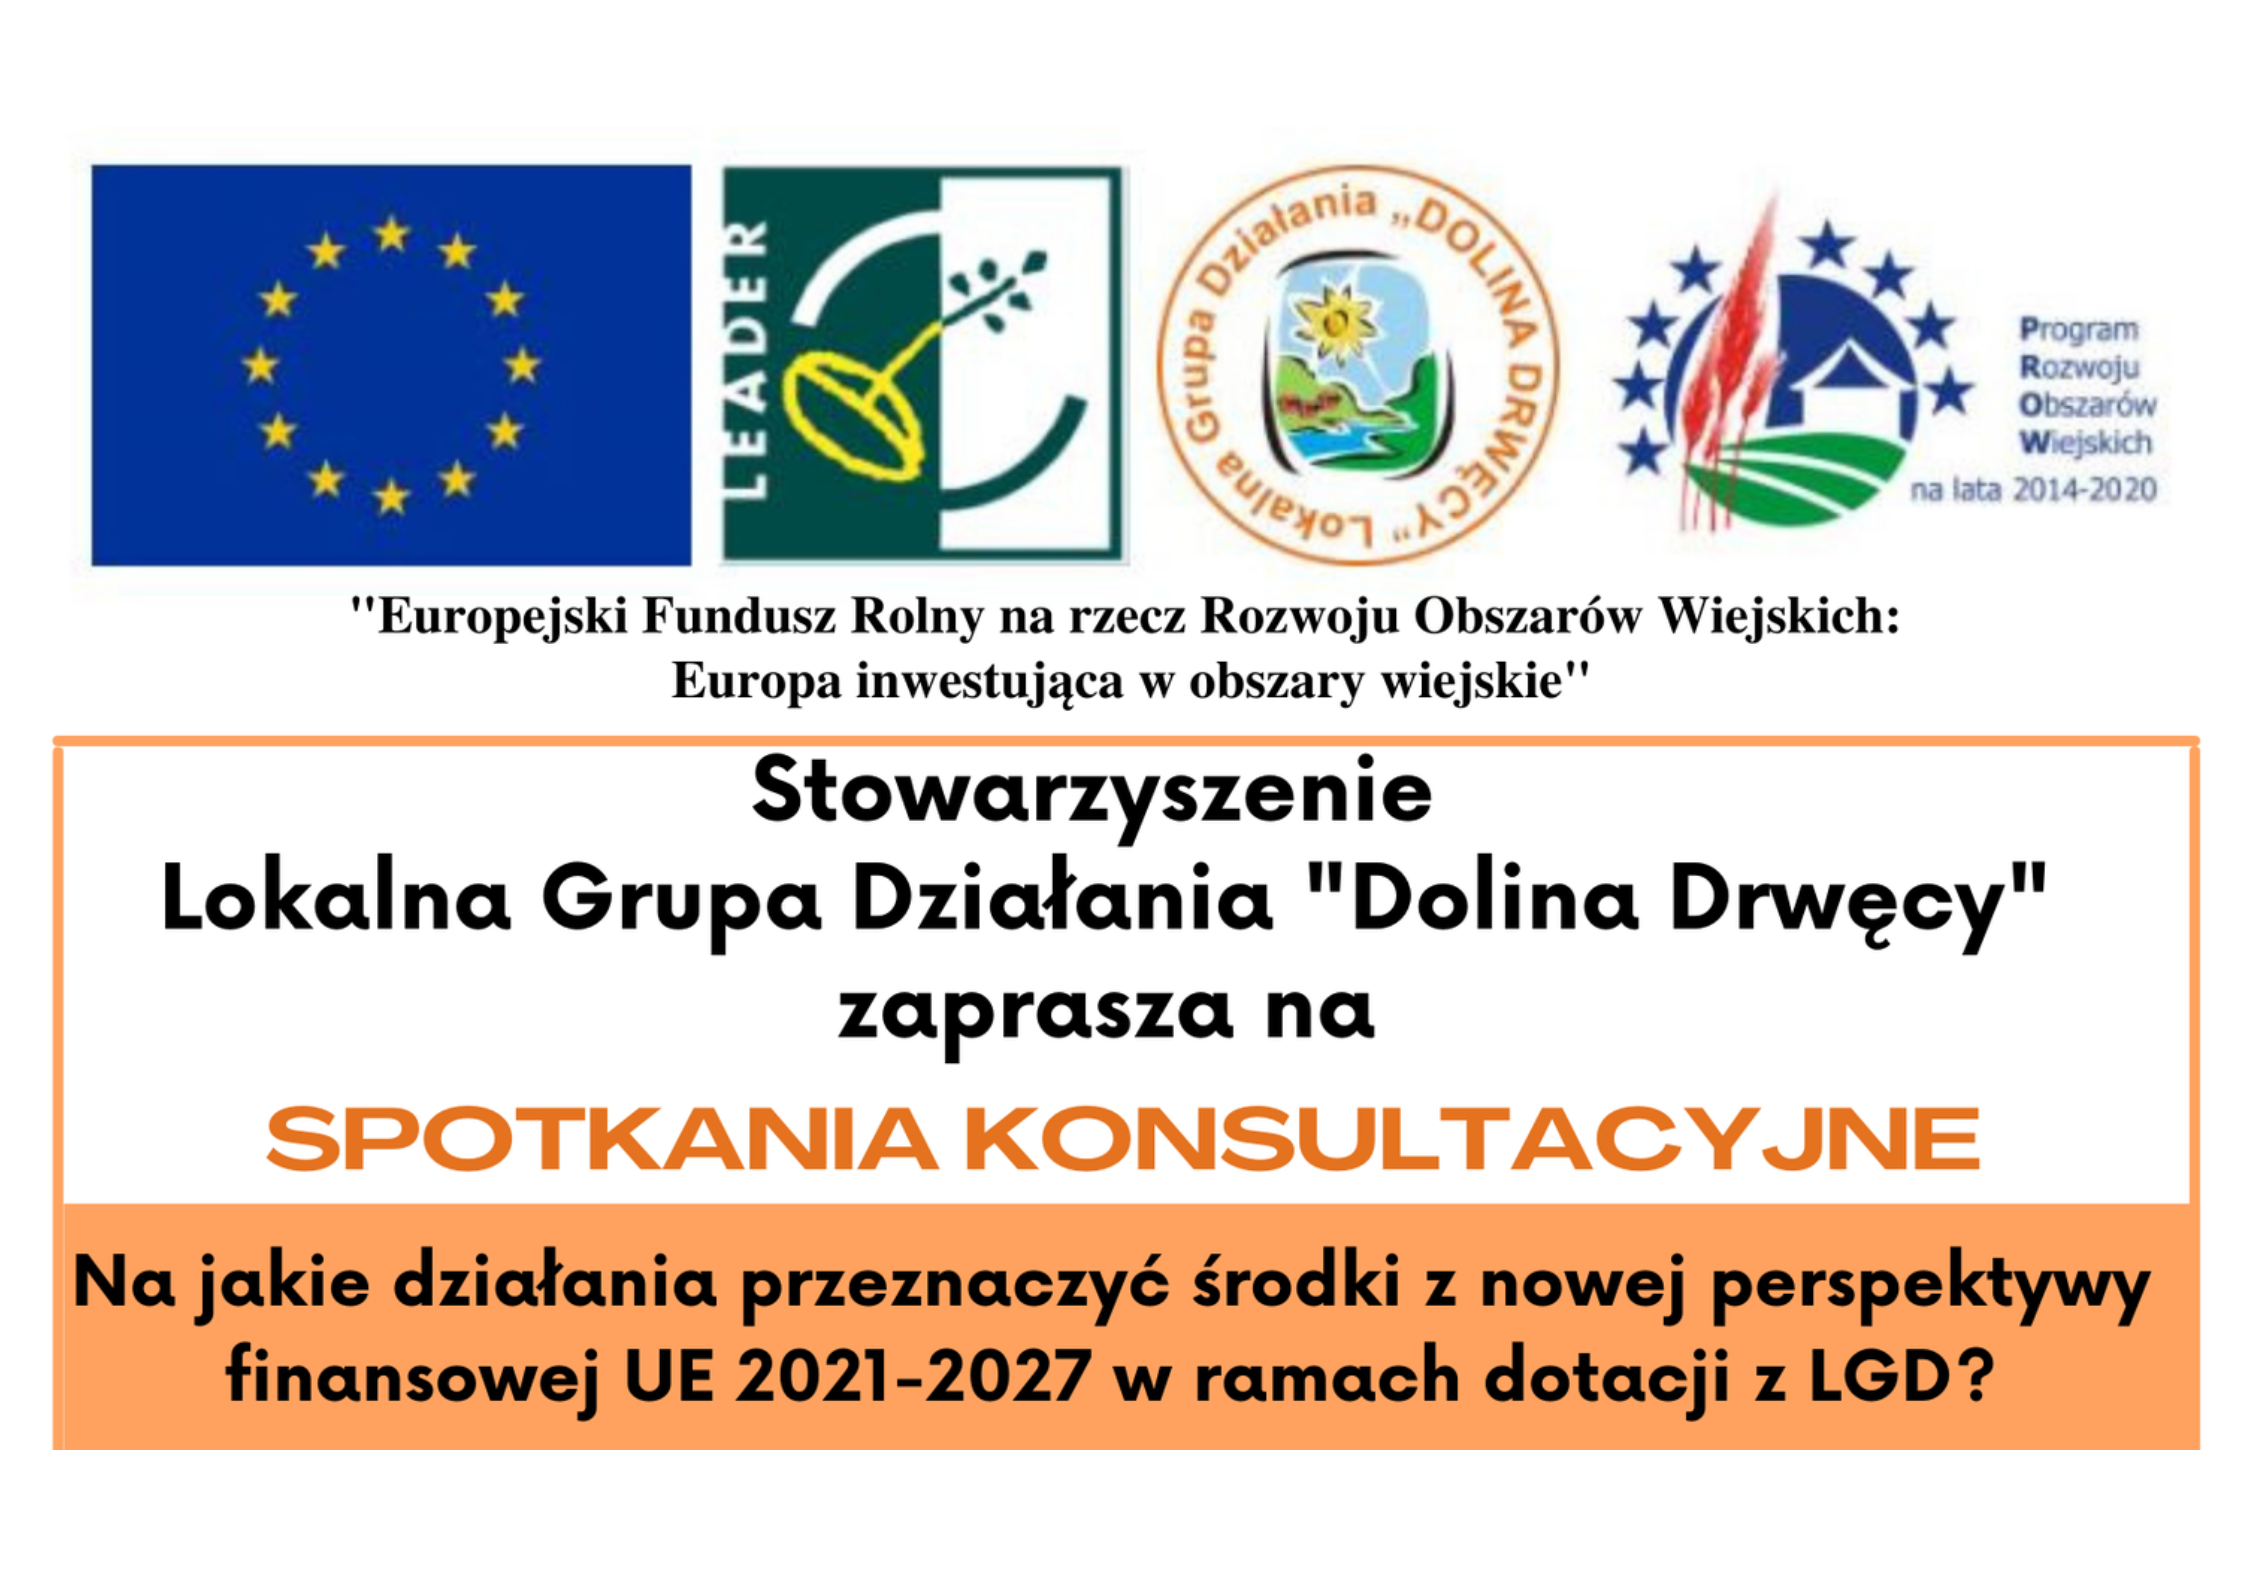 „Stowarzyszenie Lokalna Grupa Działania "Dolina Drwęcy" zaprasza na spotkanie